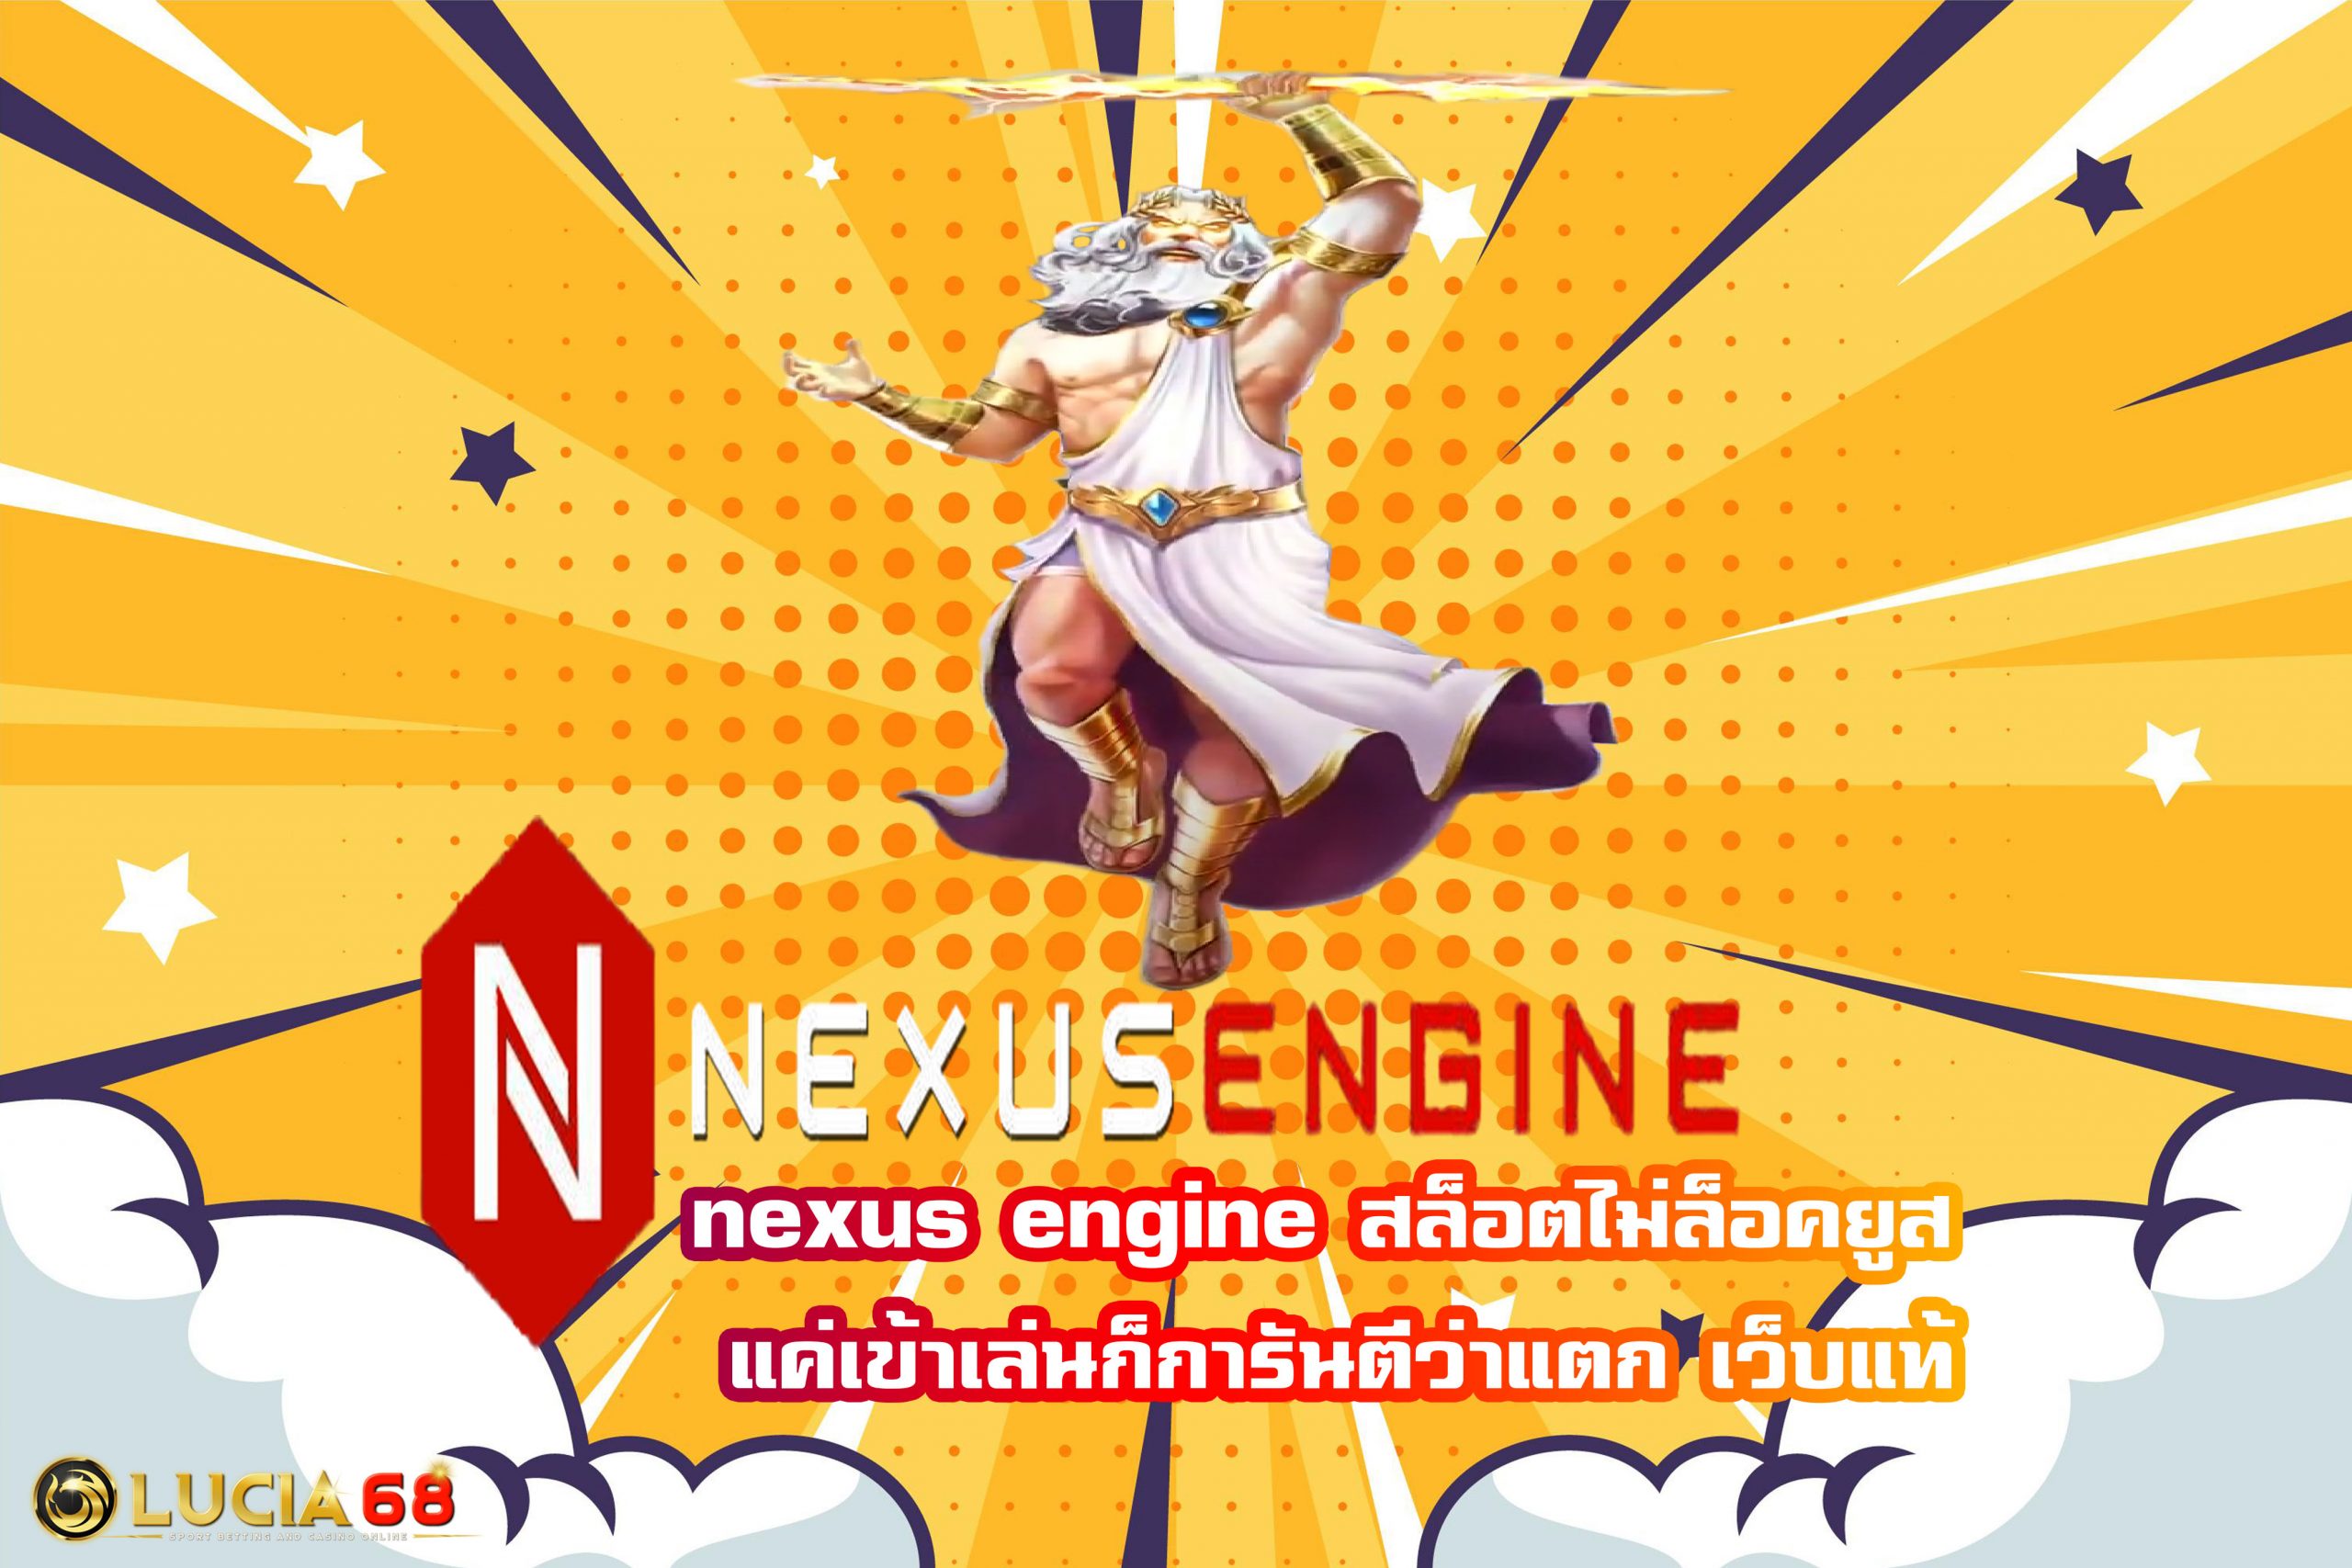 nexus engine สล็อตไม่ล็อคยูส แค่เข้าเล่นก็การันตีว่าแตก เว็บแท้